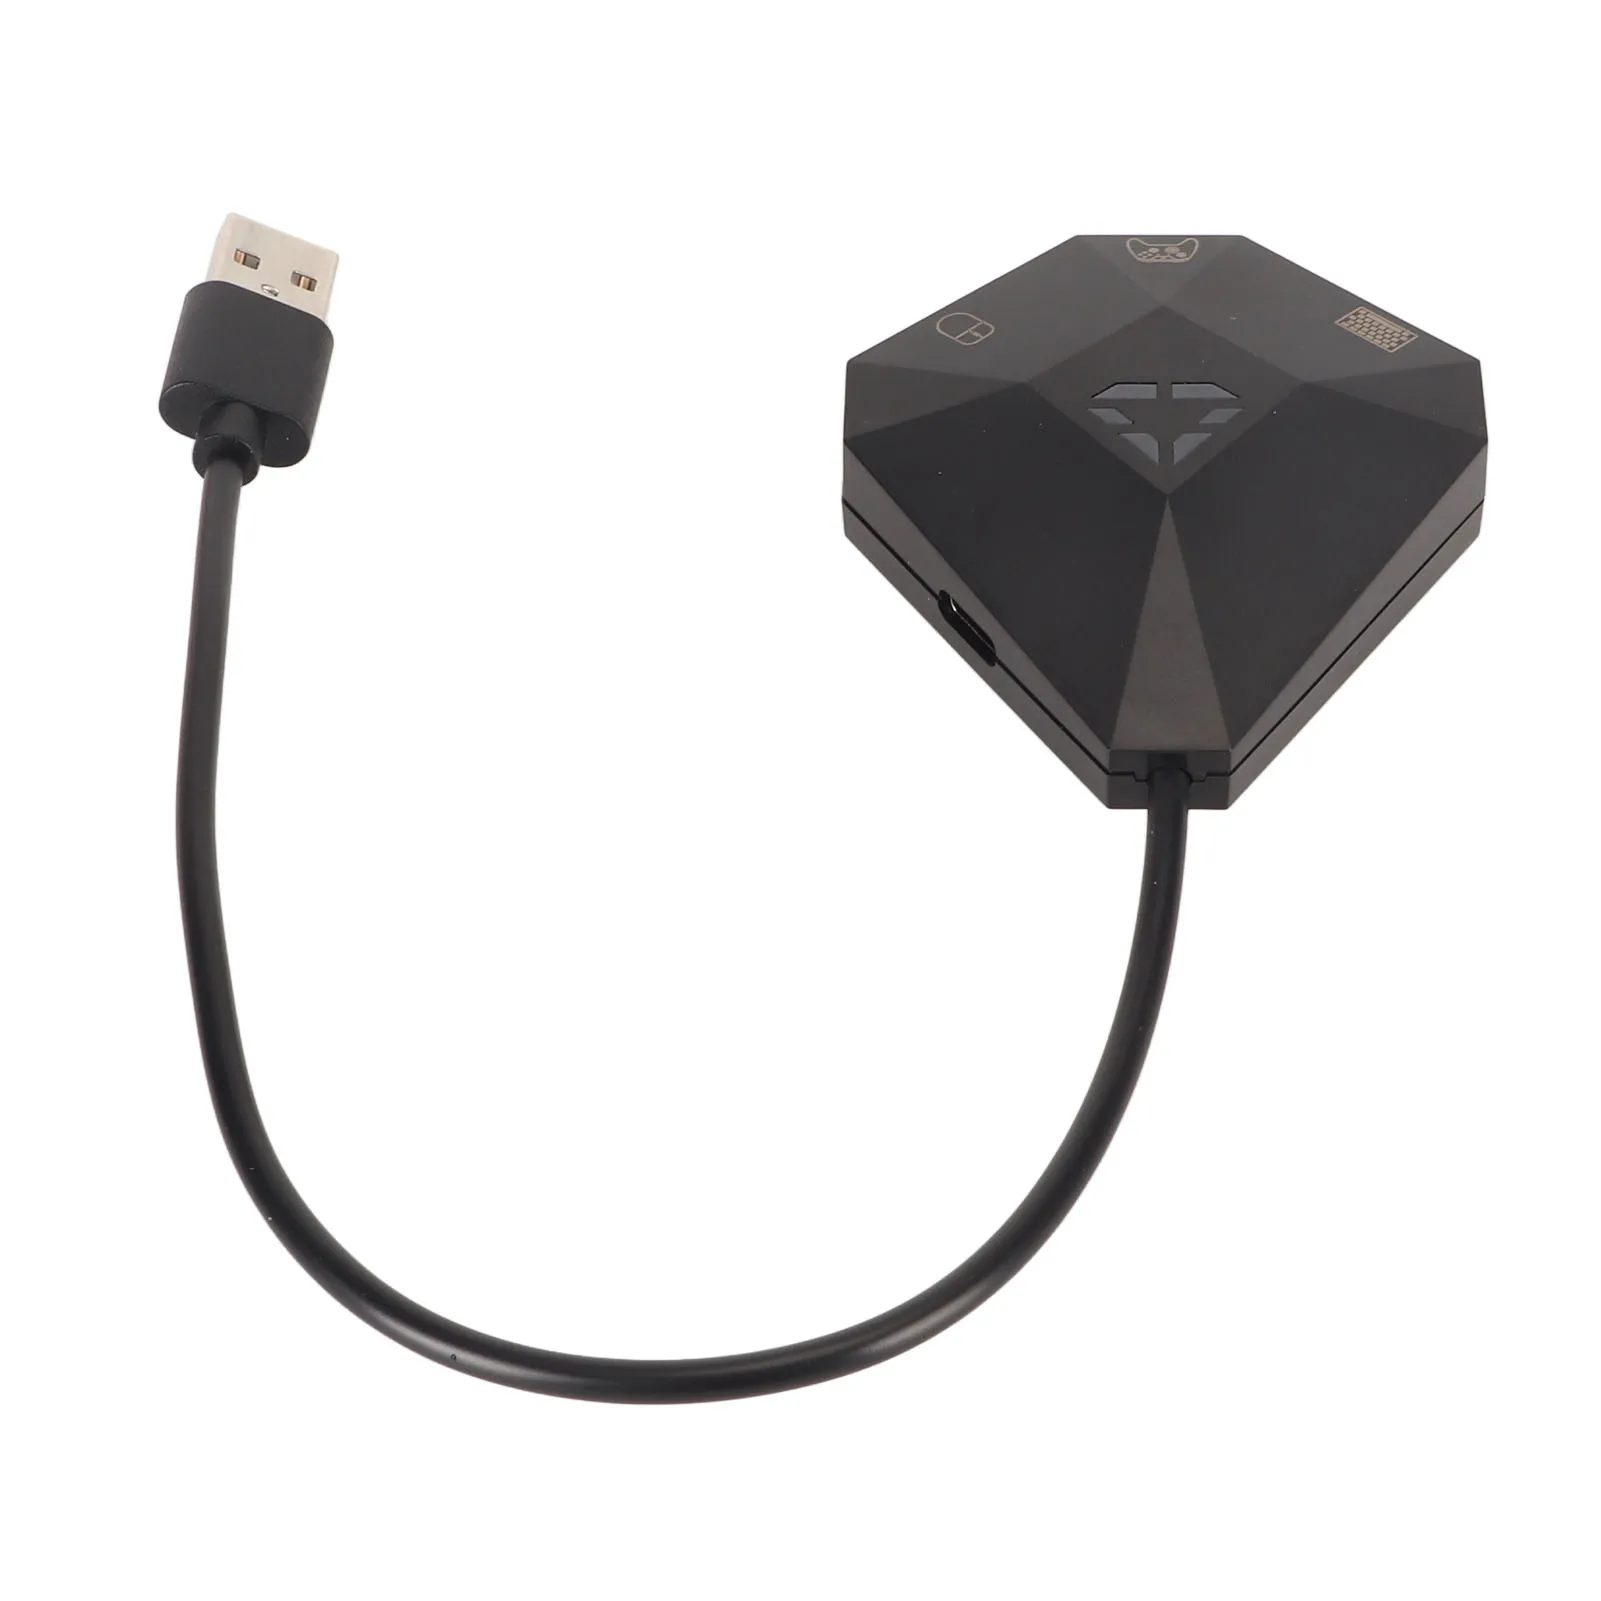 Für Schalter Tastatur Maus Adapter Plug & Play Tastatur Maus Konverter für ps4 für Xbox One für PS3 für Box